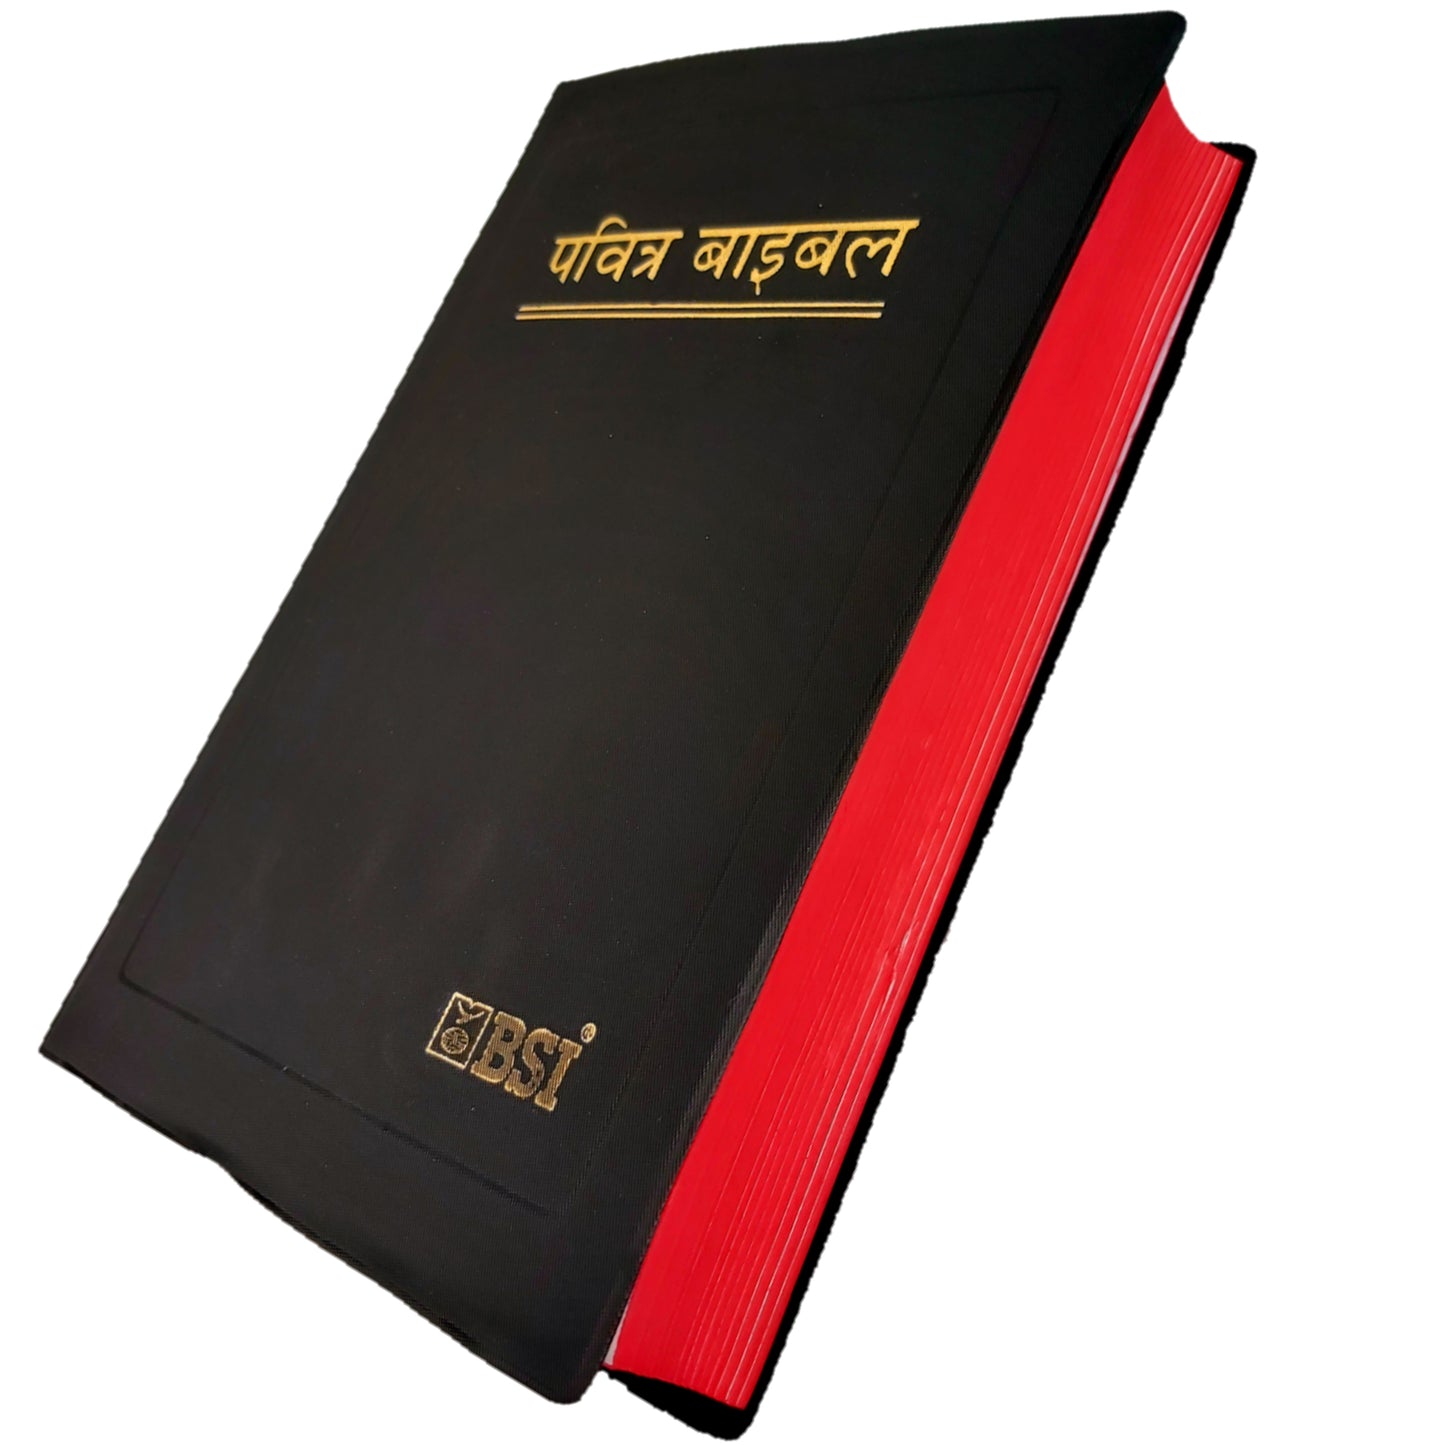 The Holy New Hindi Bible